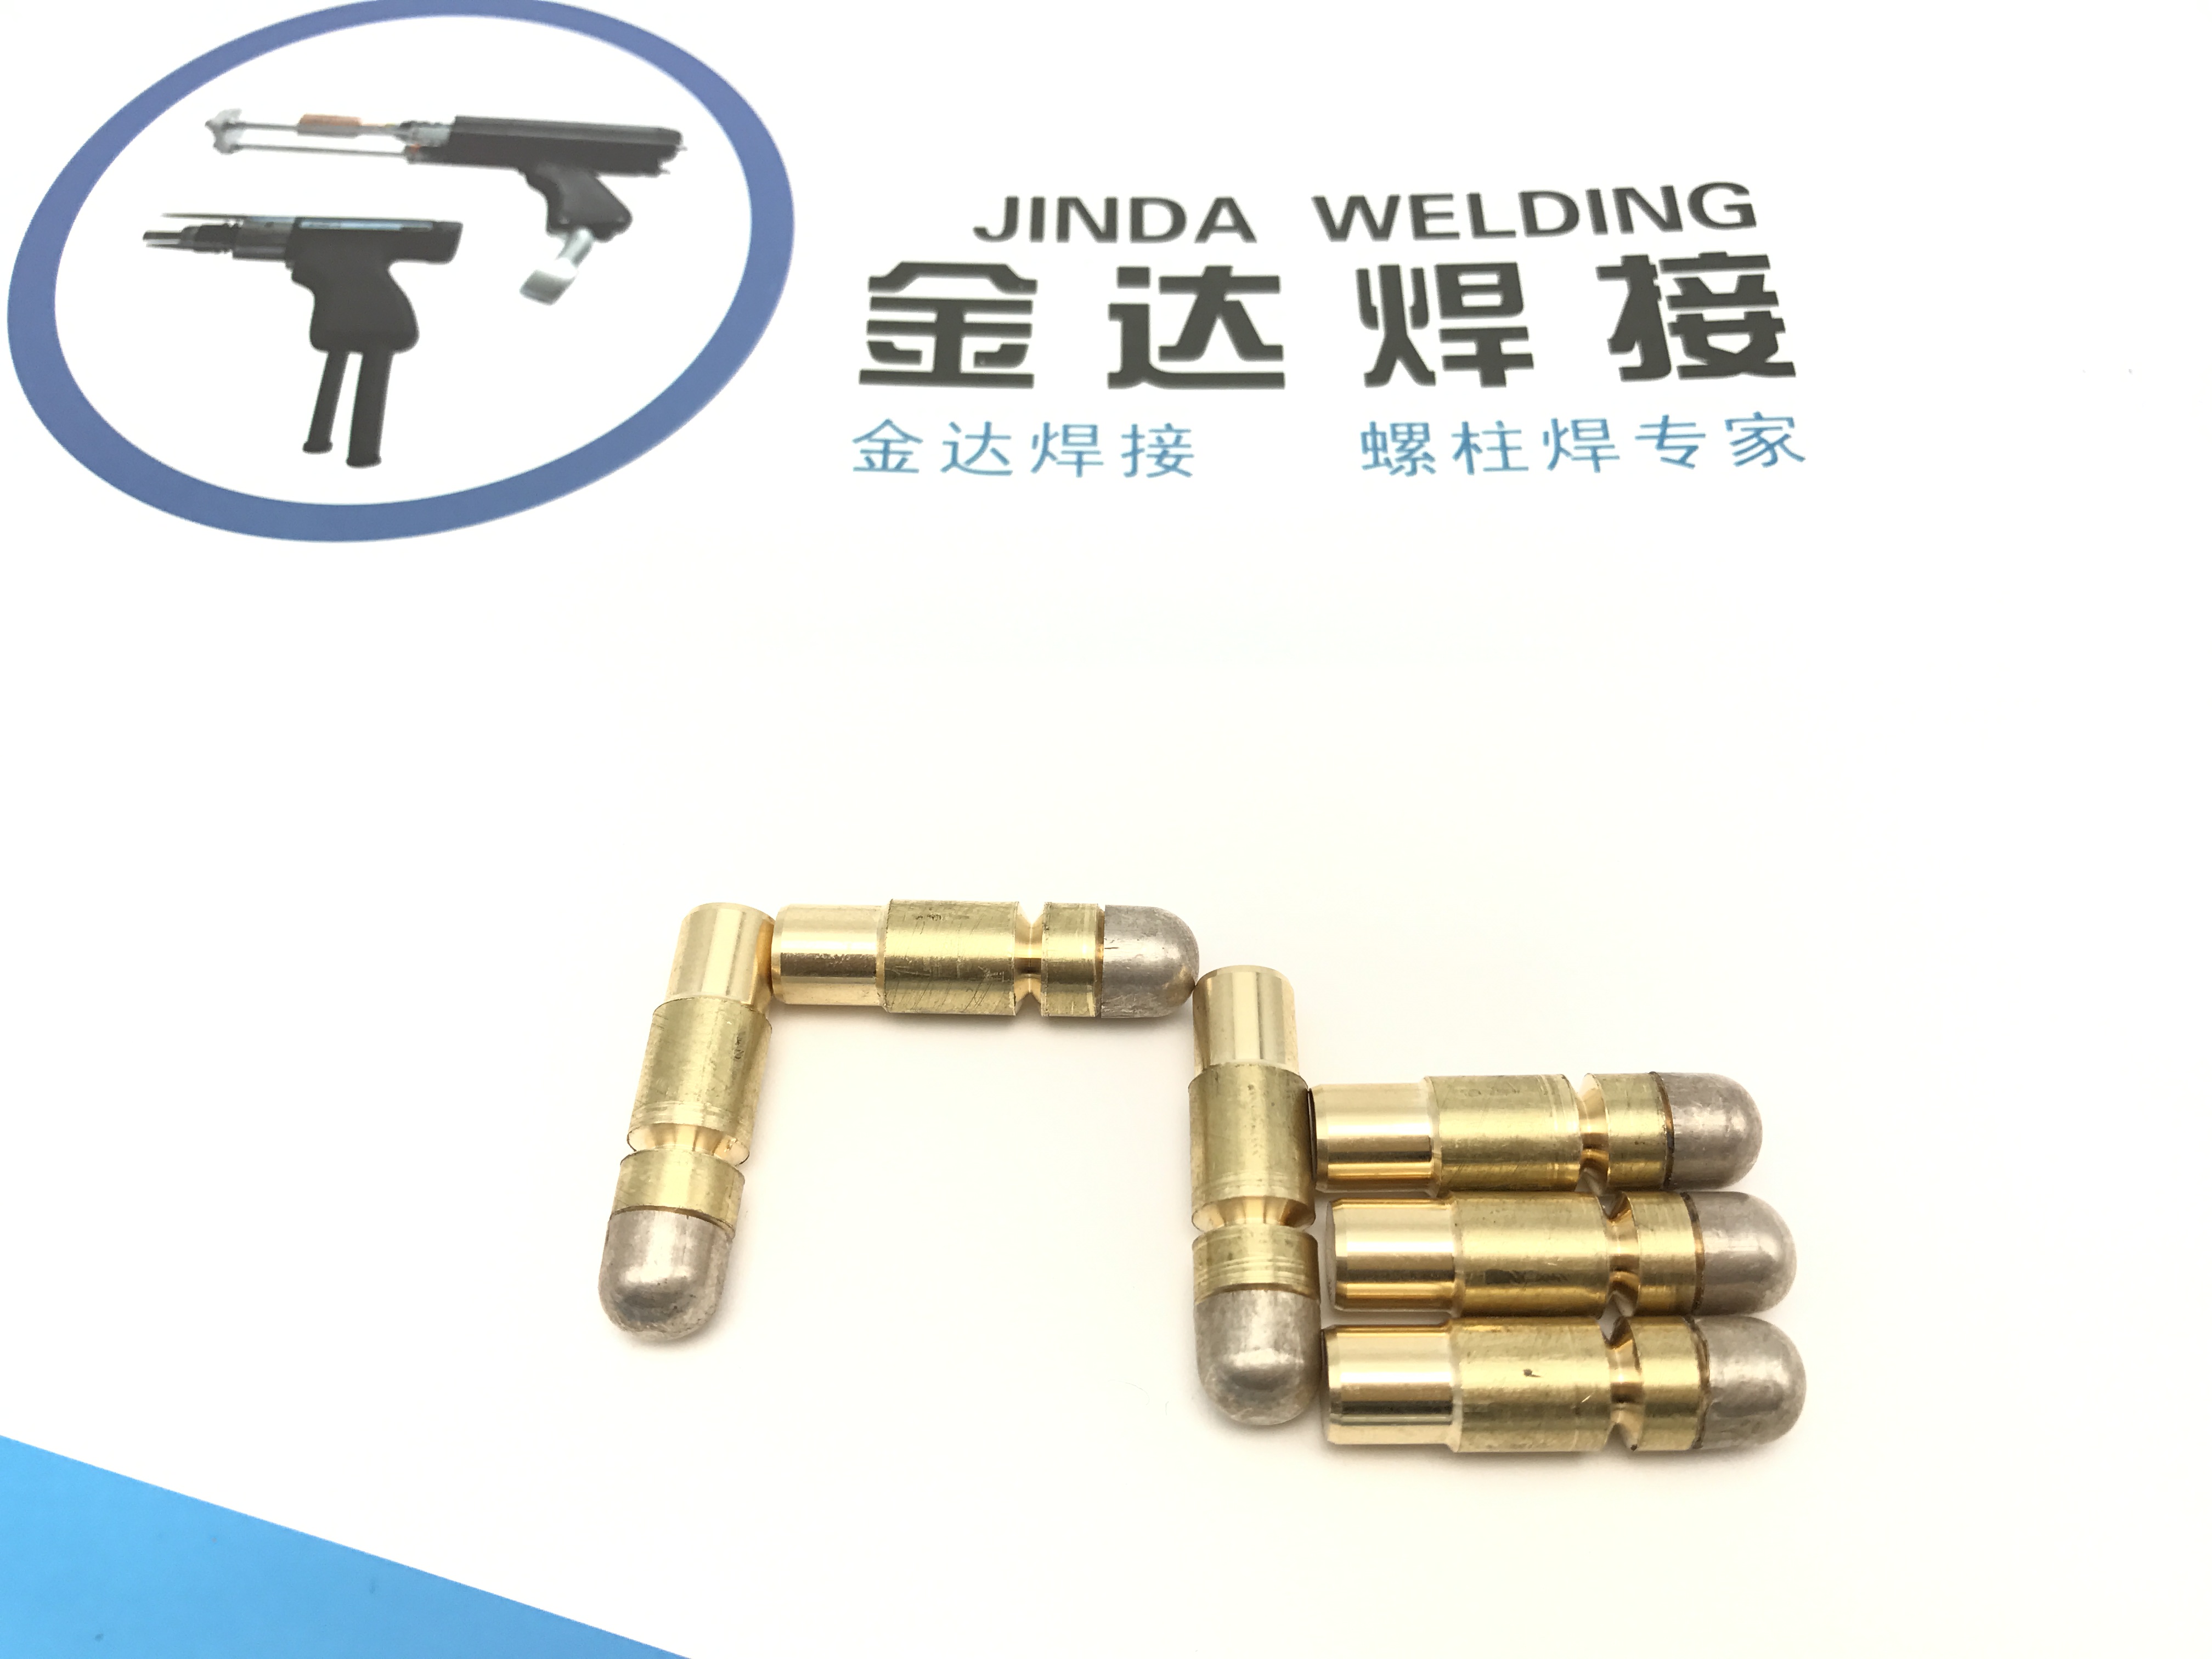 銀鉛焊釘 陰極保護銅焊 Pin brazing 銅焊釘